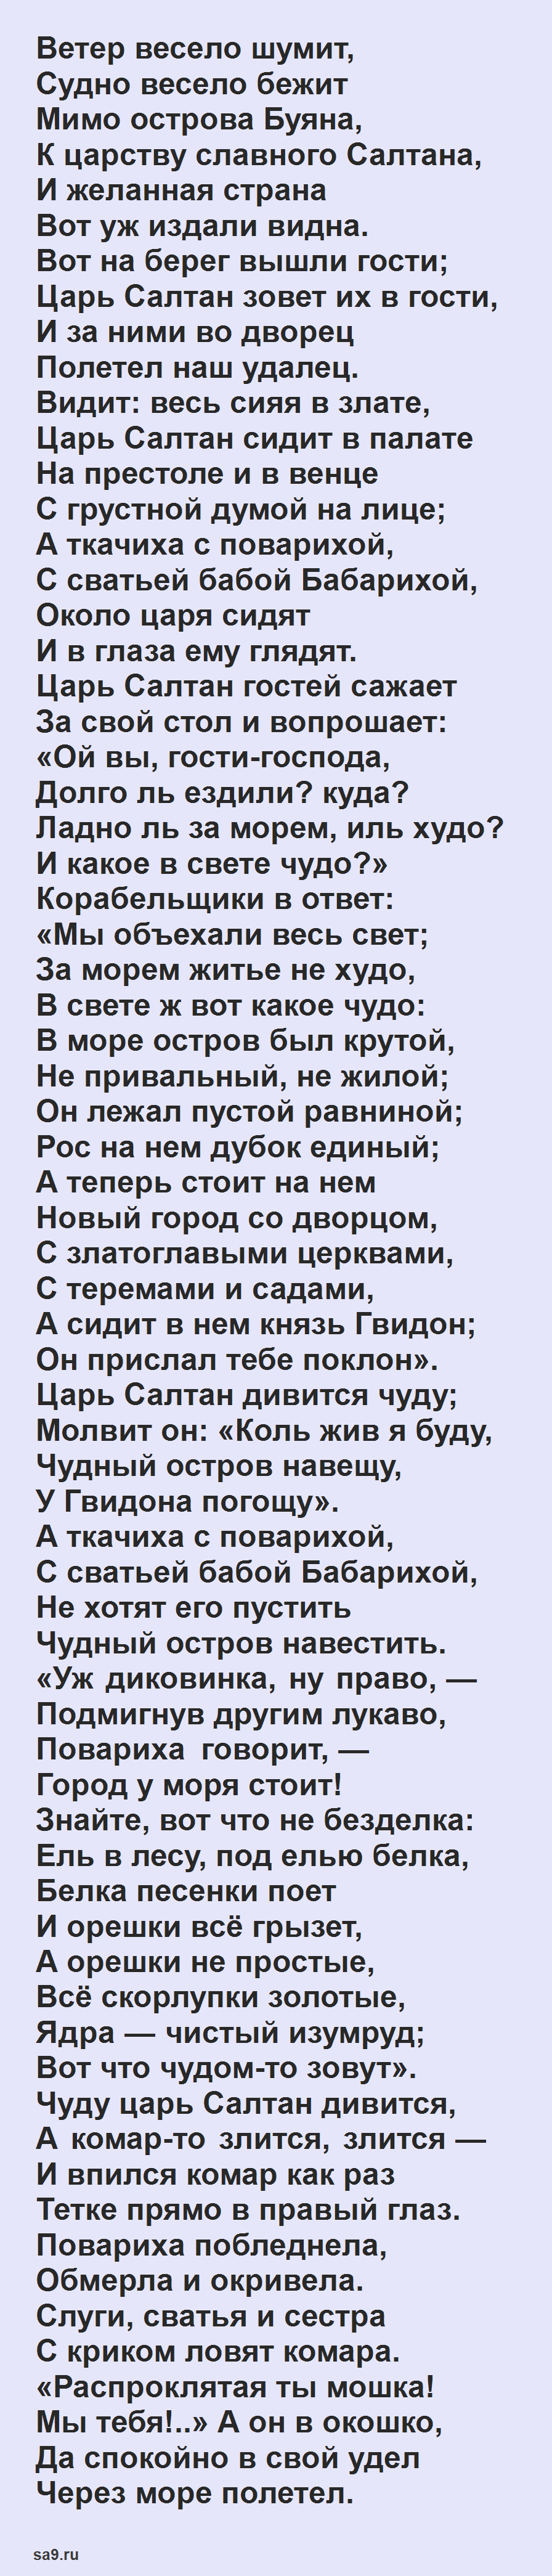 Сказка 'О царе Салтане', Пушкин